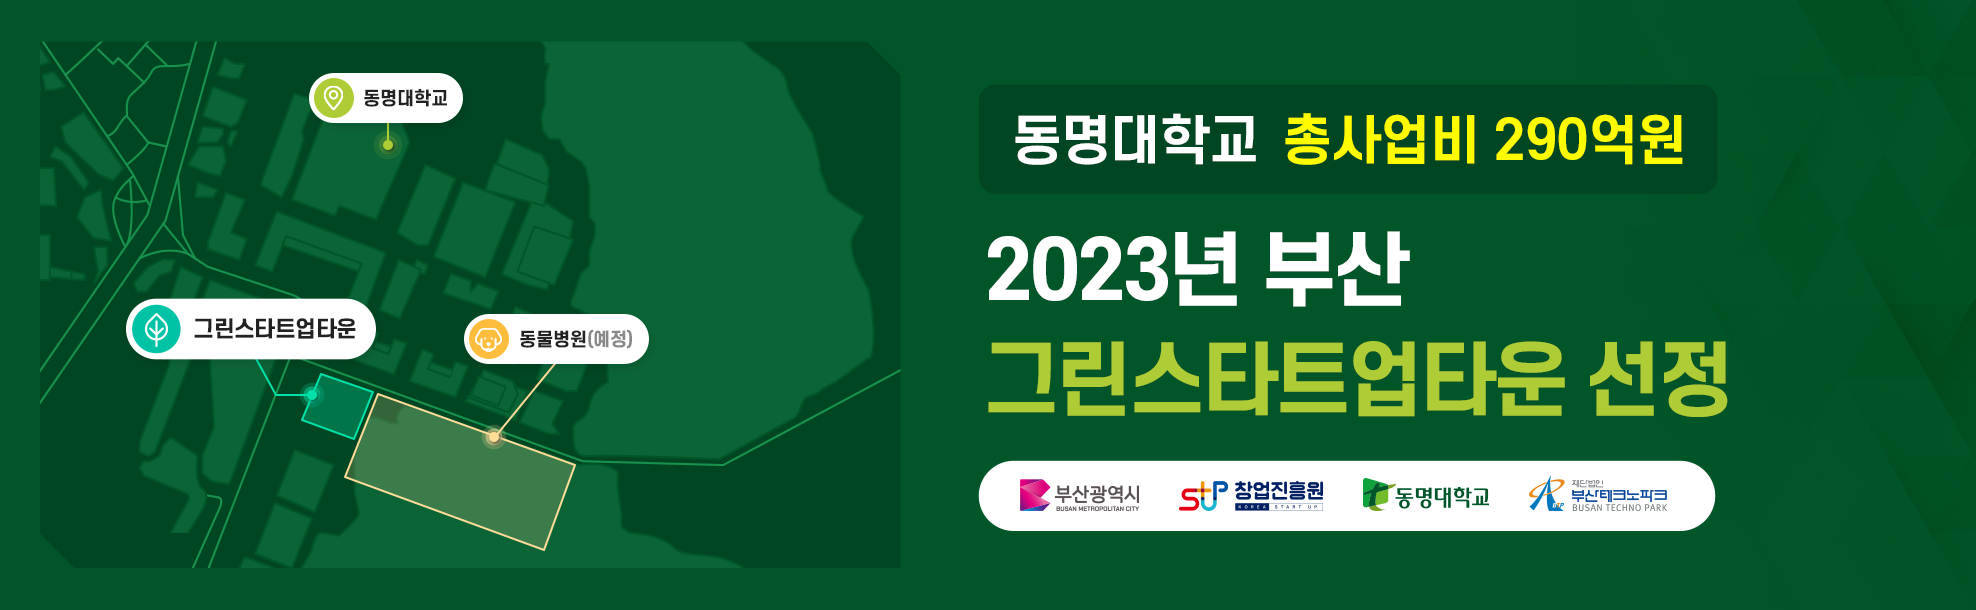 2023년 부산 그린스타트업타운 선정